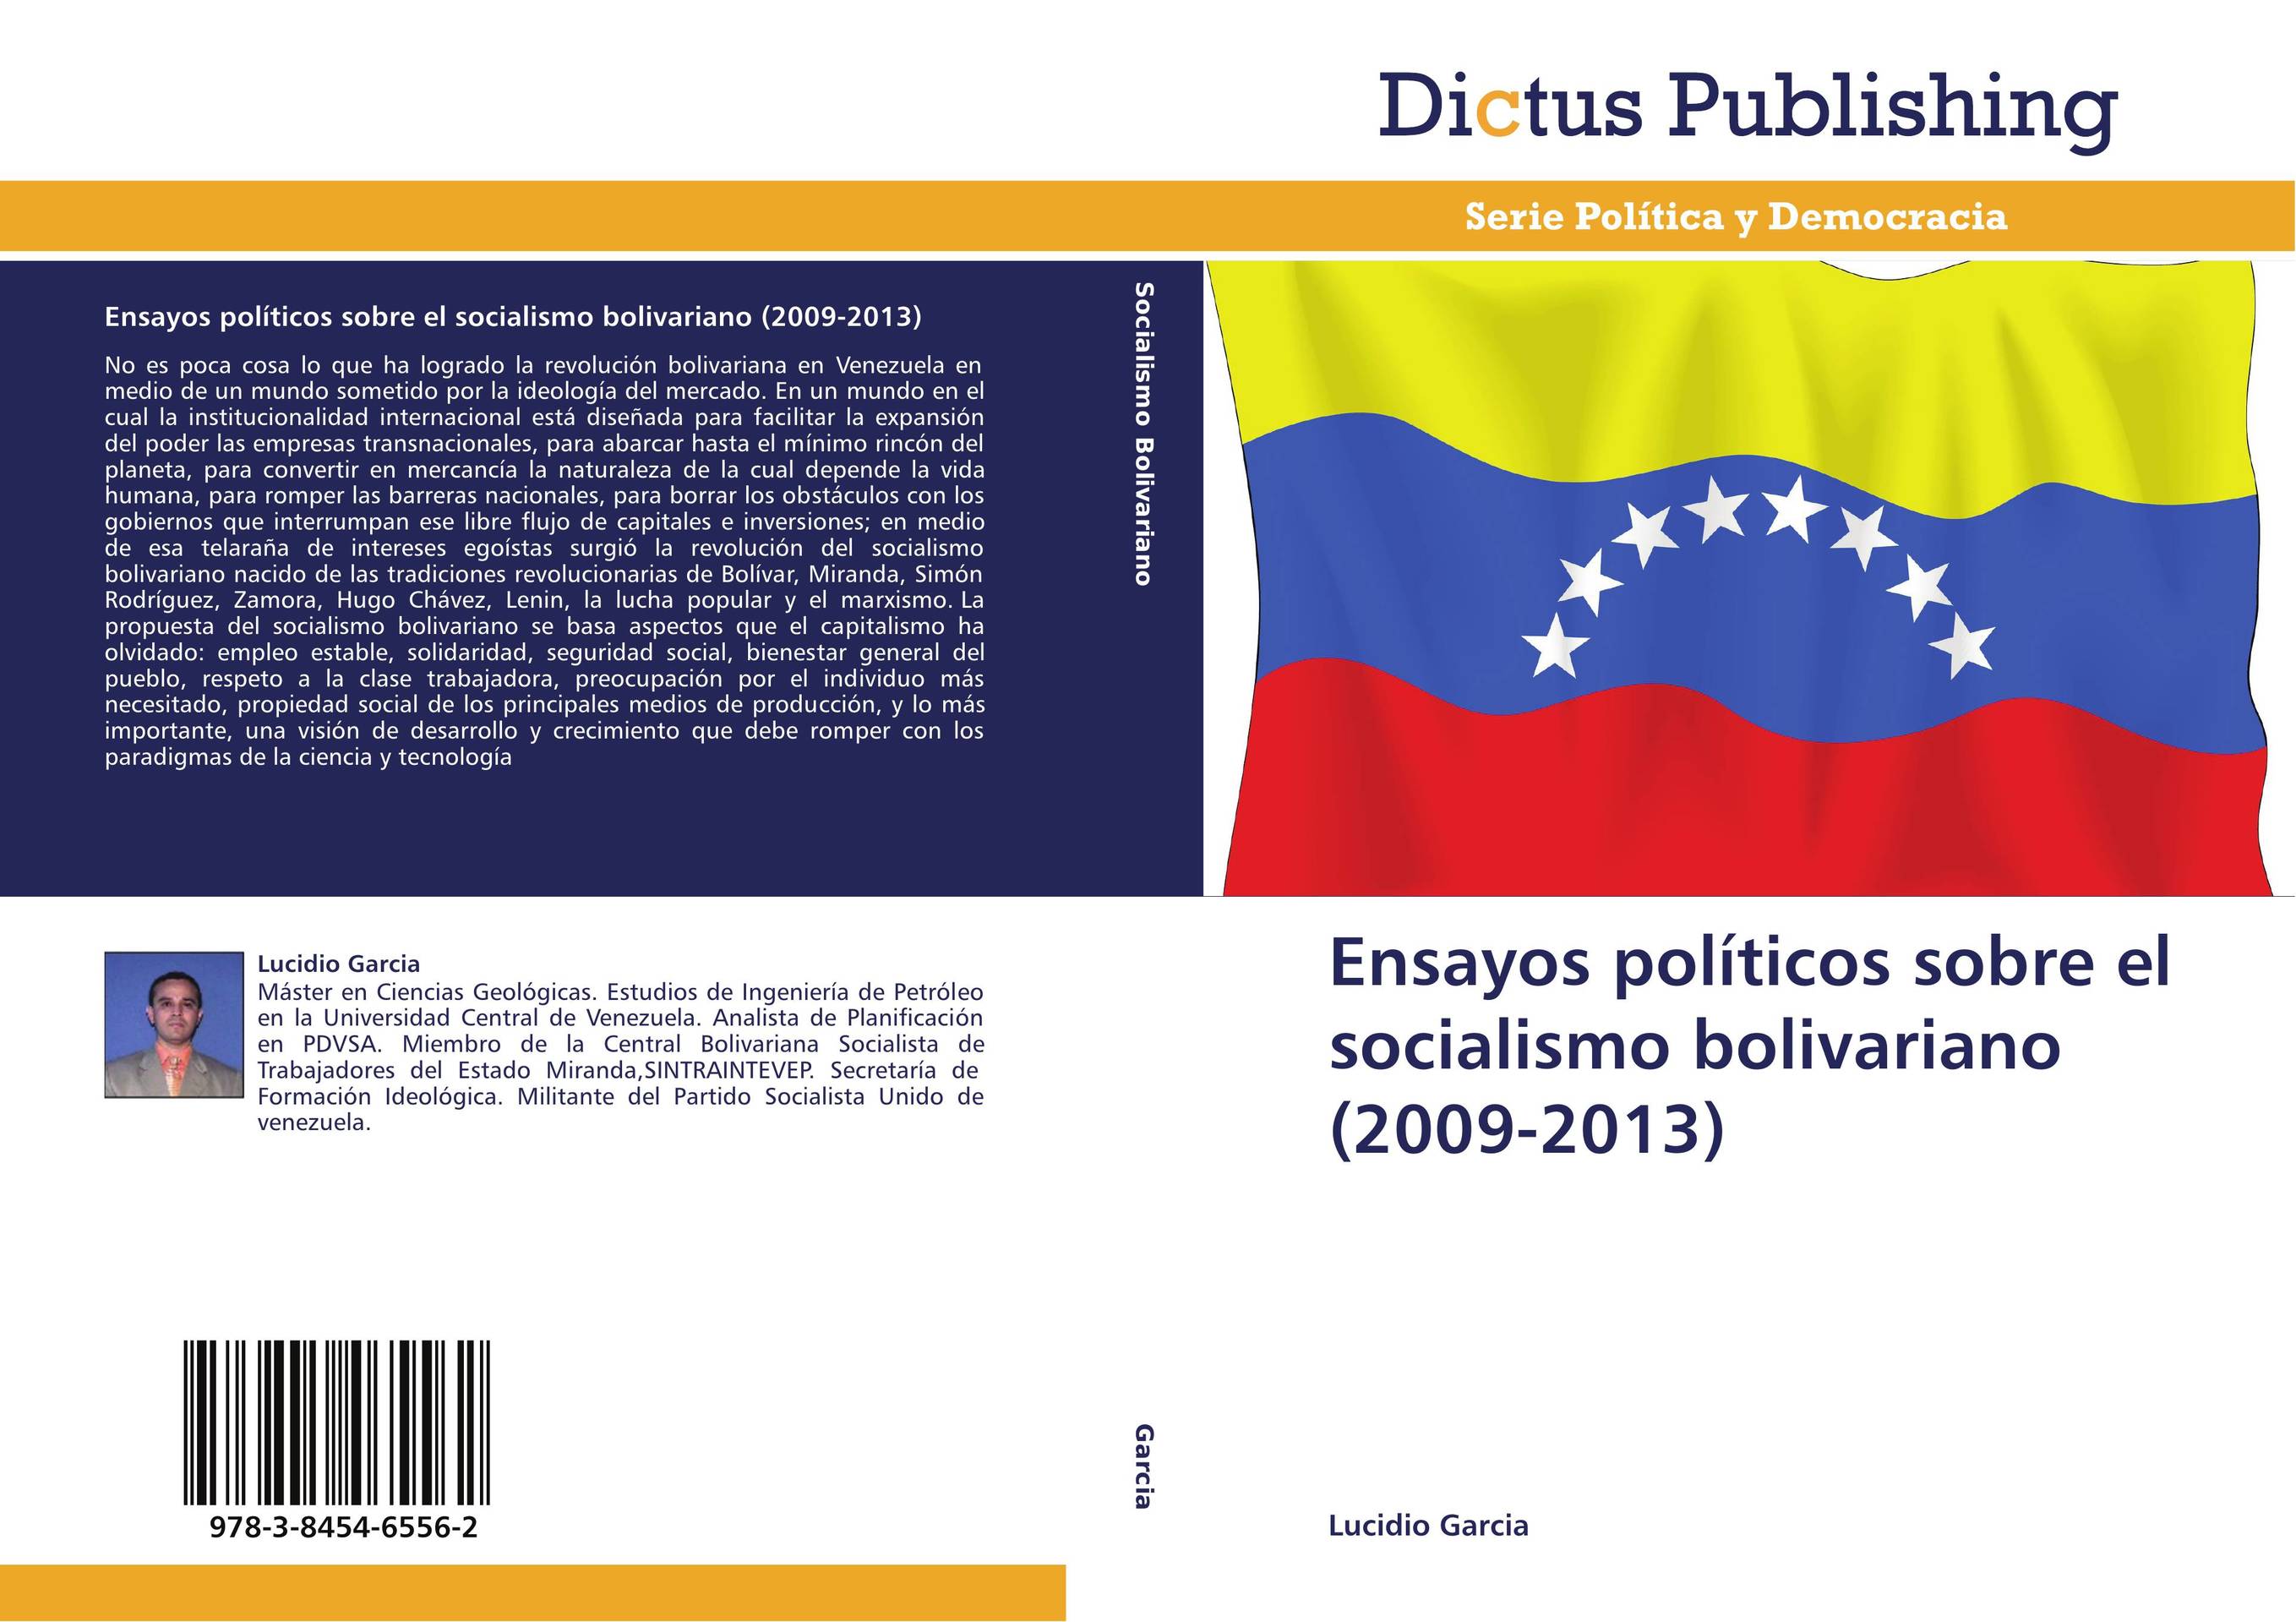 Ensayos políticos sobre el socialismo bolivariano (2009-2013)